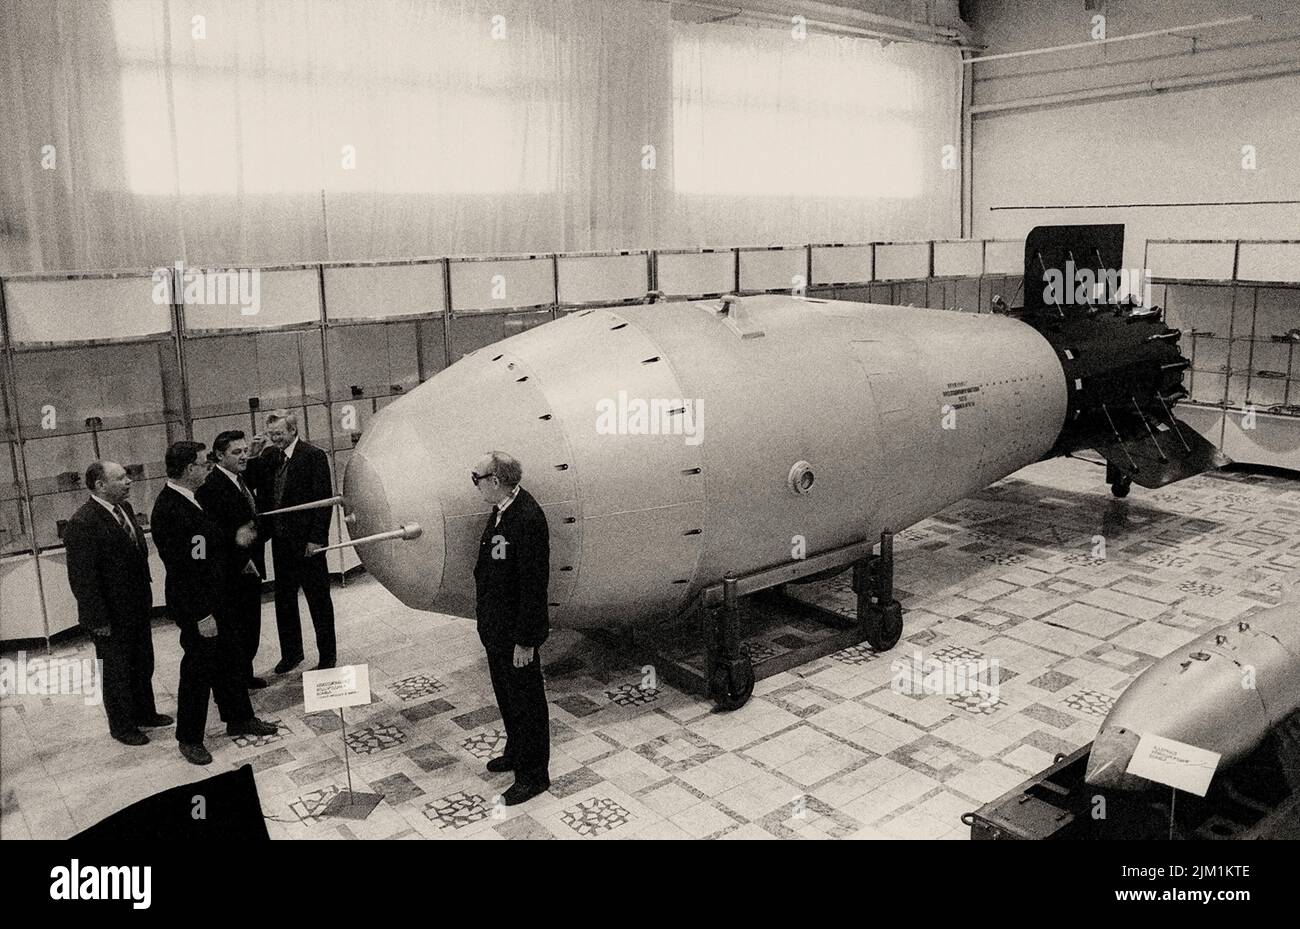 Кто первым в мире создал водородную бомбу. Ан602 термоядерная бомба — «царь-бомба» (58,6 мегатонн). Водородная бомба Сахарова 1953. Царь бомба 100 мегатонн.